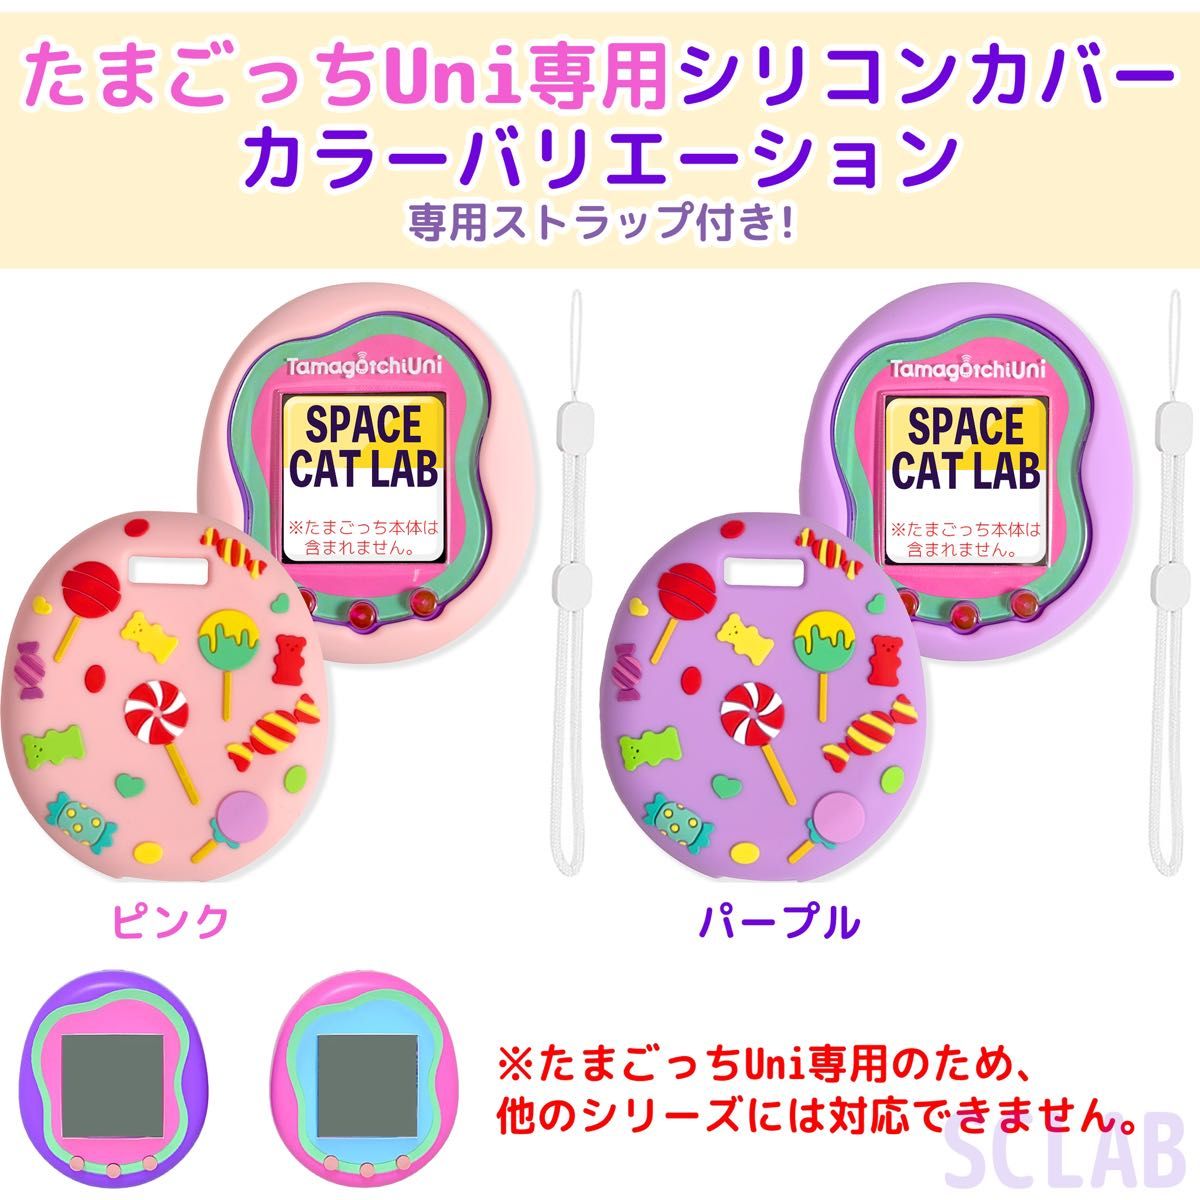 【値引有】たまごっち Uni ユニ 専用 ケース カバー シリコン CD ピンク